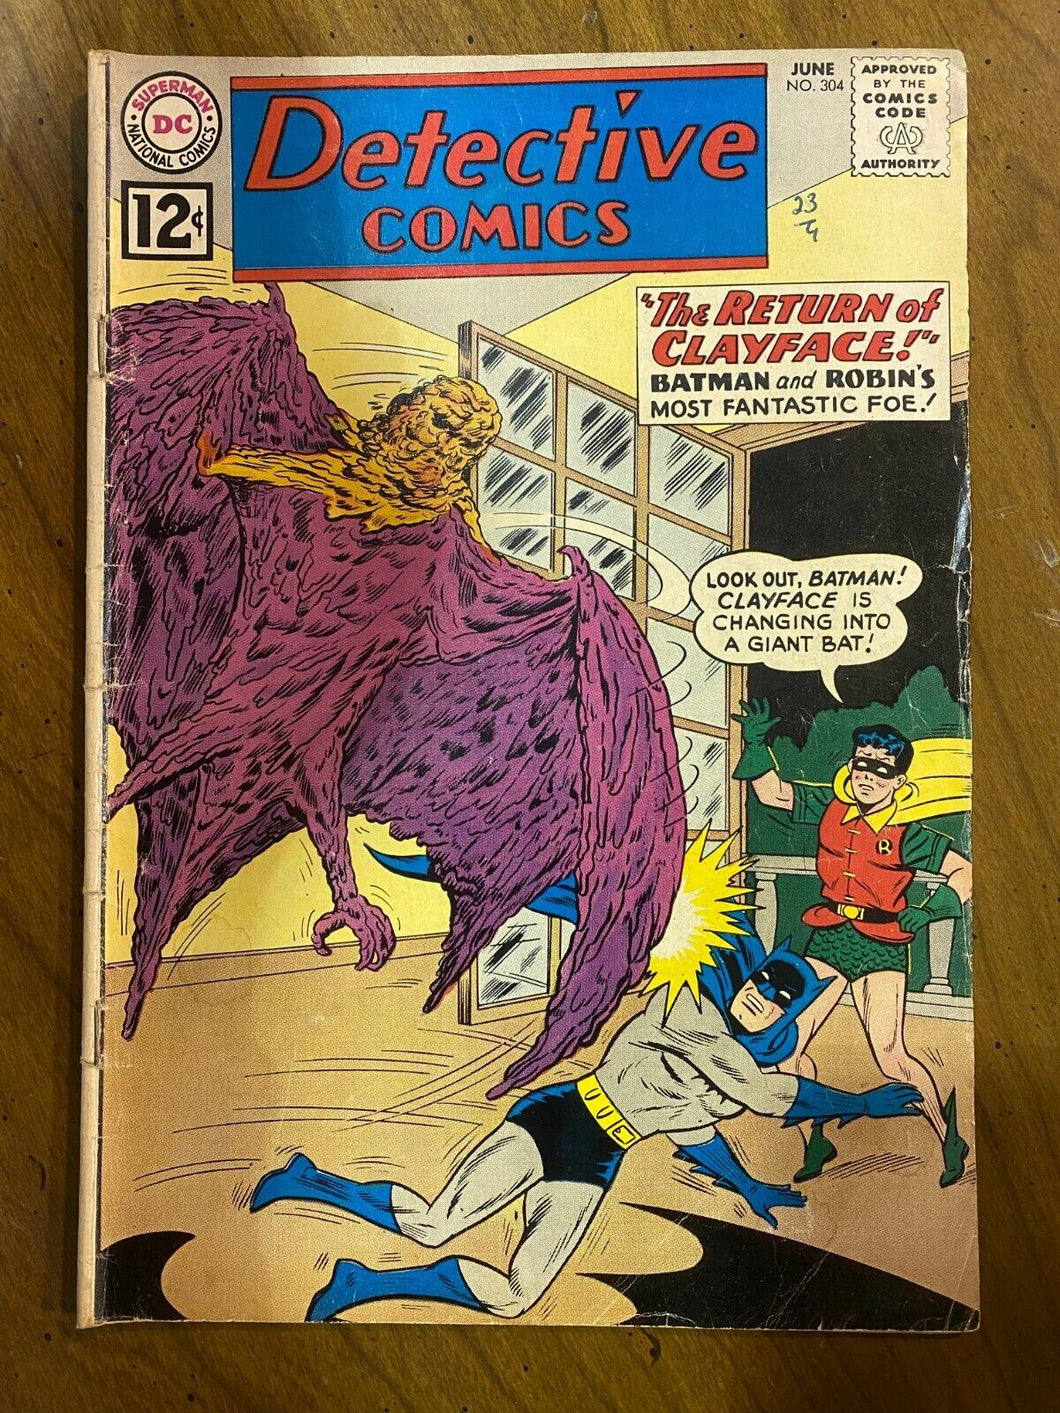 1962 Detective Comics Vol 1 Issue 304